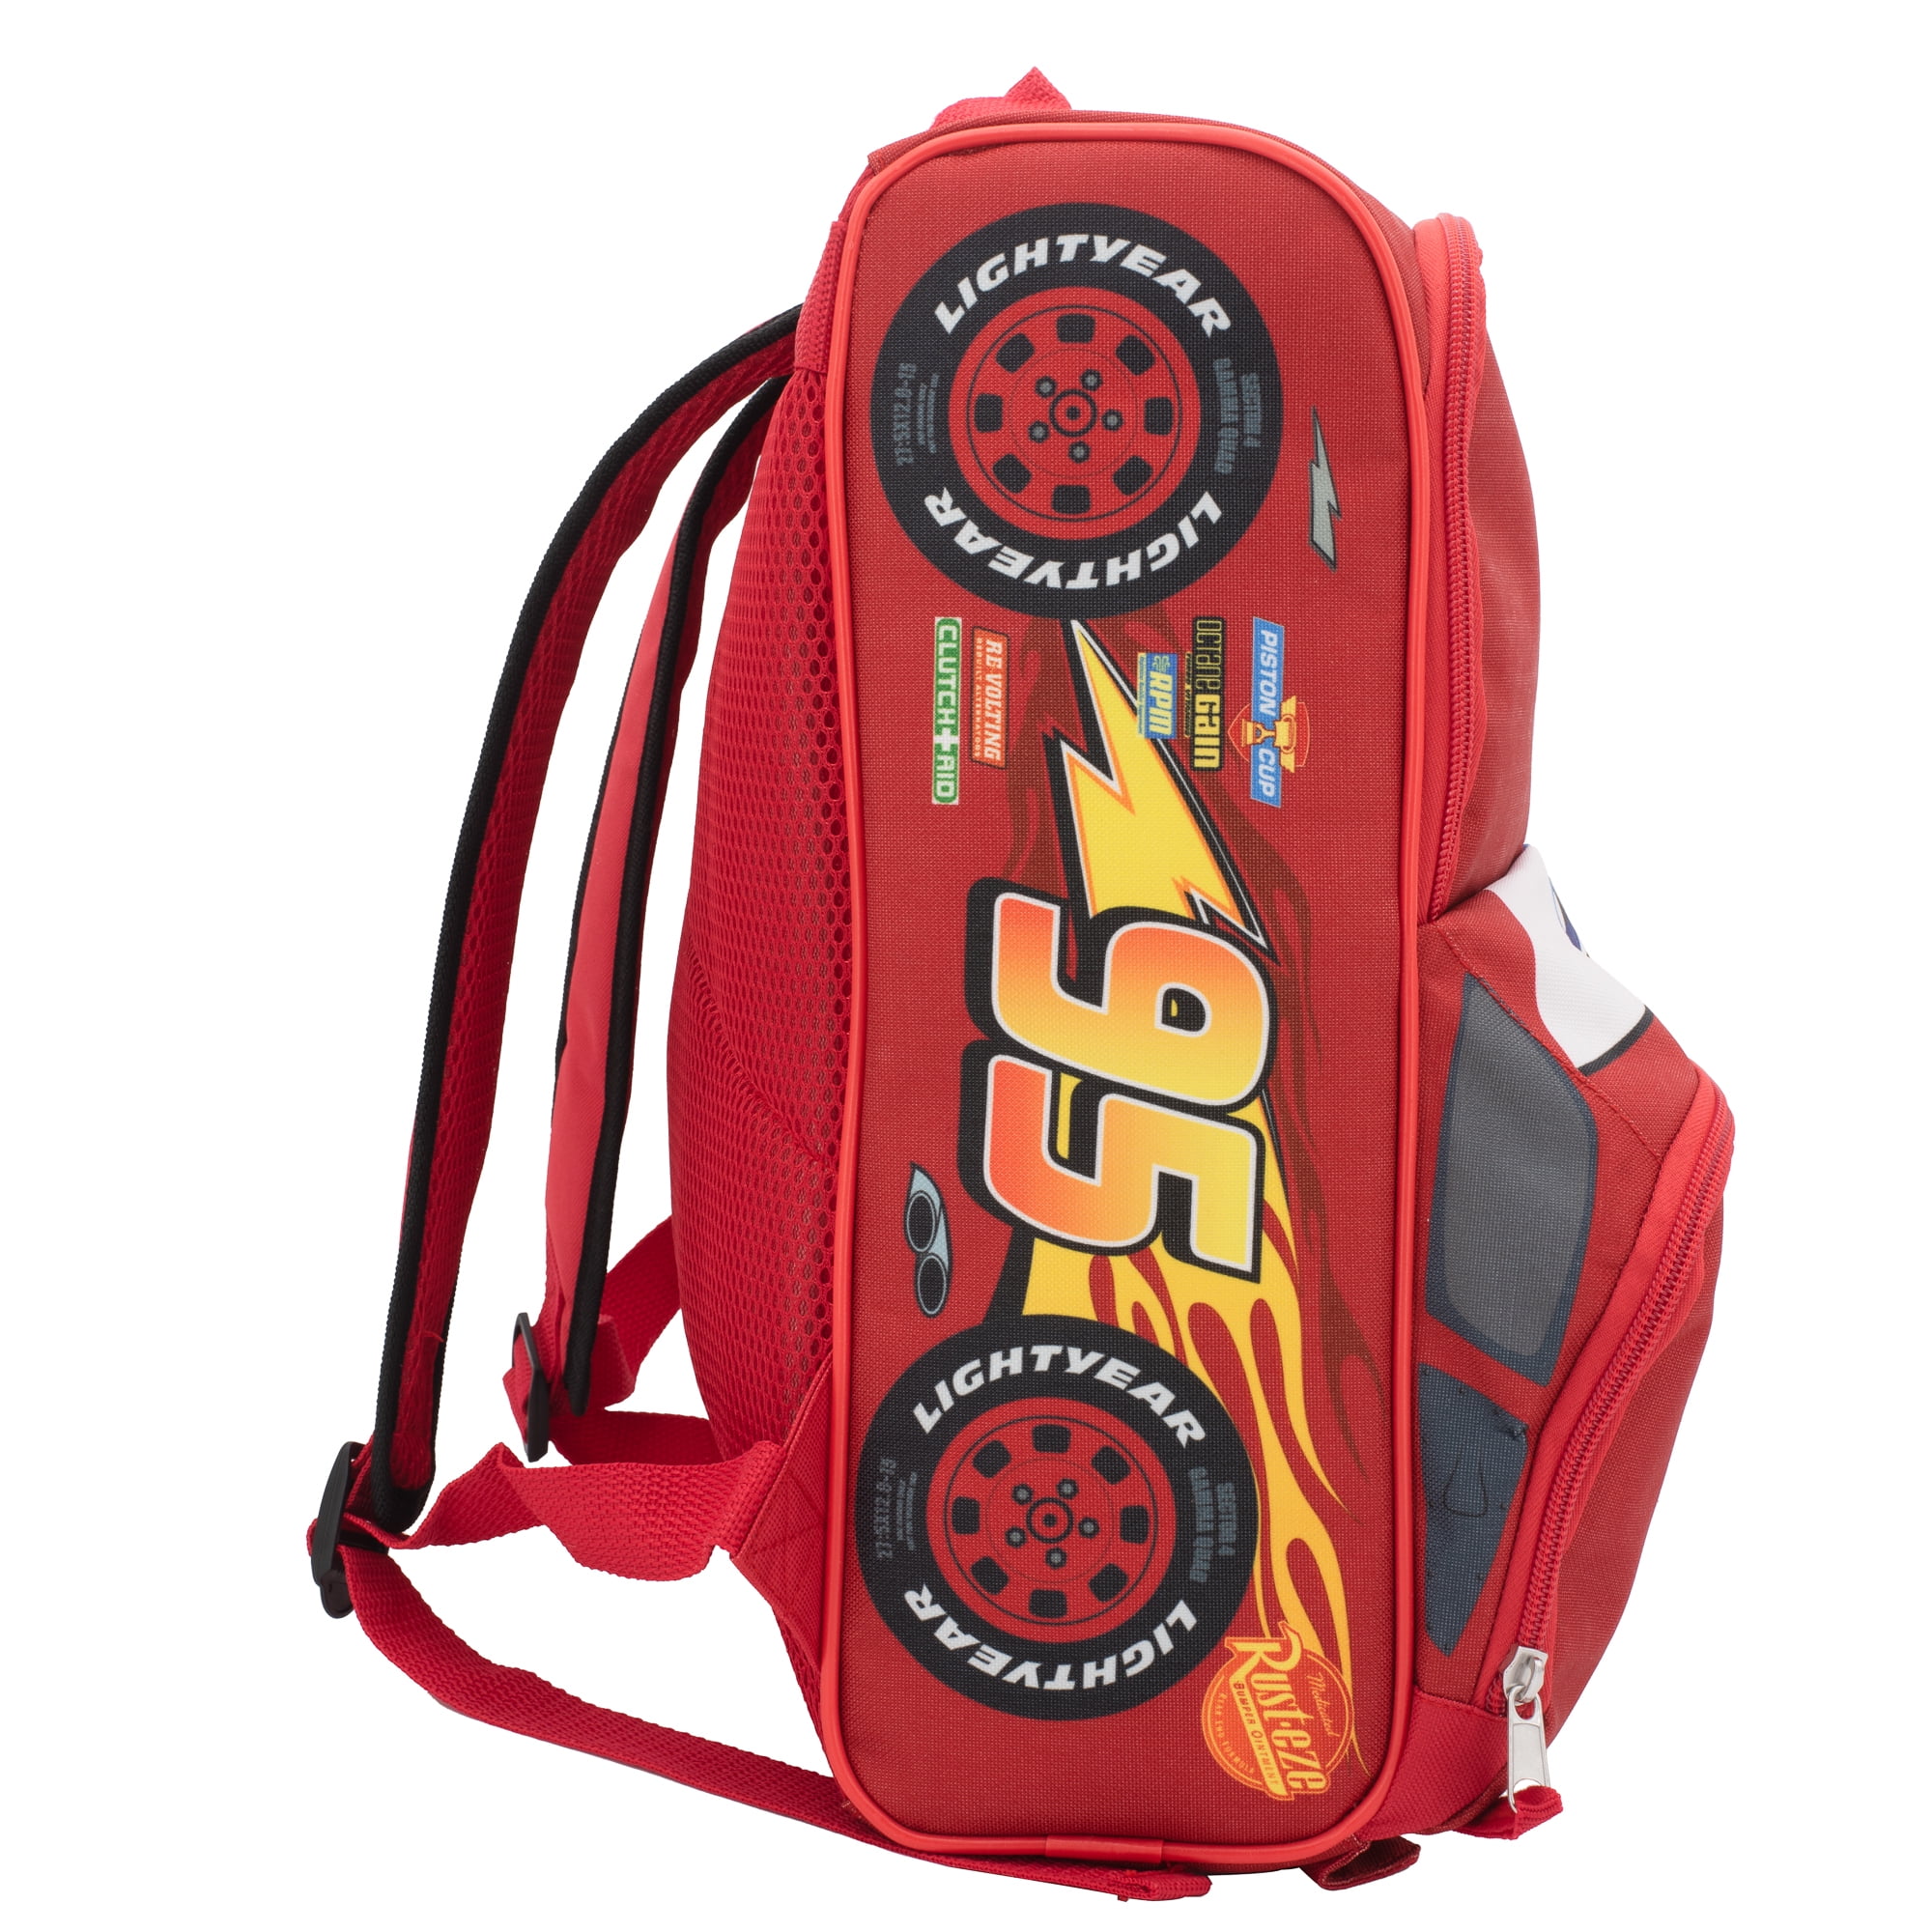 Disney Pixar Cars 14” Lightning McQueen Shaped Backpack for Boys & Girls,  Kids School Bag, Red